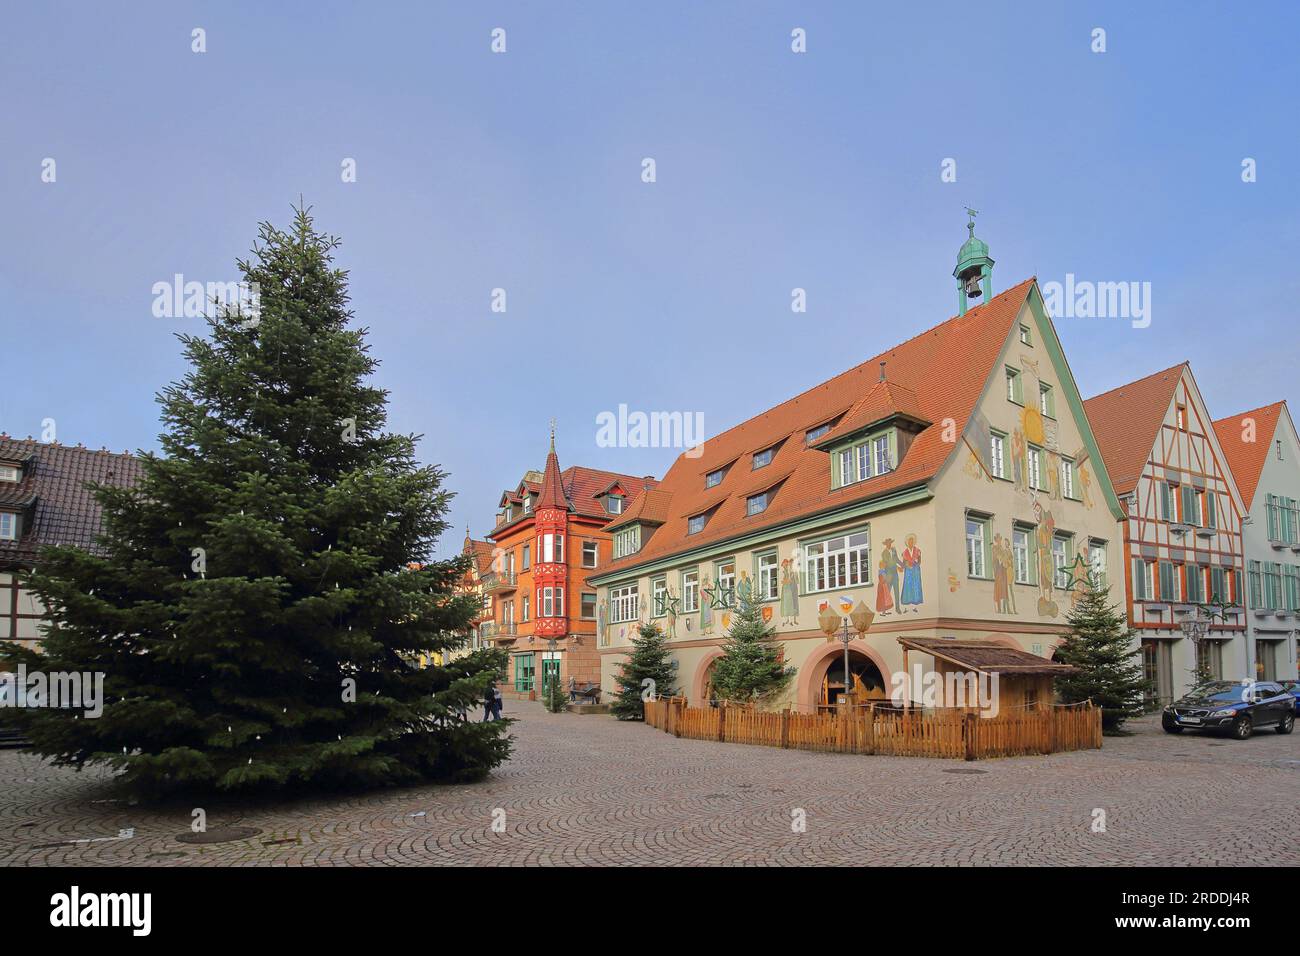 Historisches Rathaus mit Wandgemälde und Weihnachtsbaum, Haslach, Kinzig Valley, südlicher Schwarzwald, Schwarzwald, Baden-Württemberg, Deutschland Stockfoto